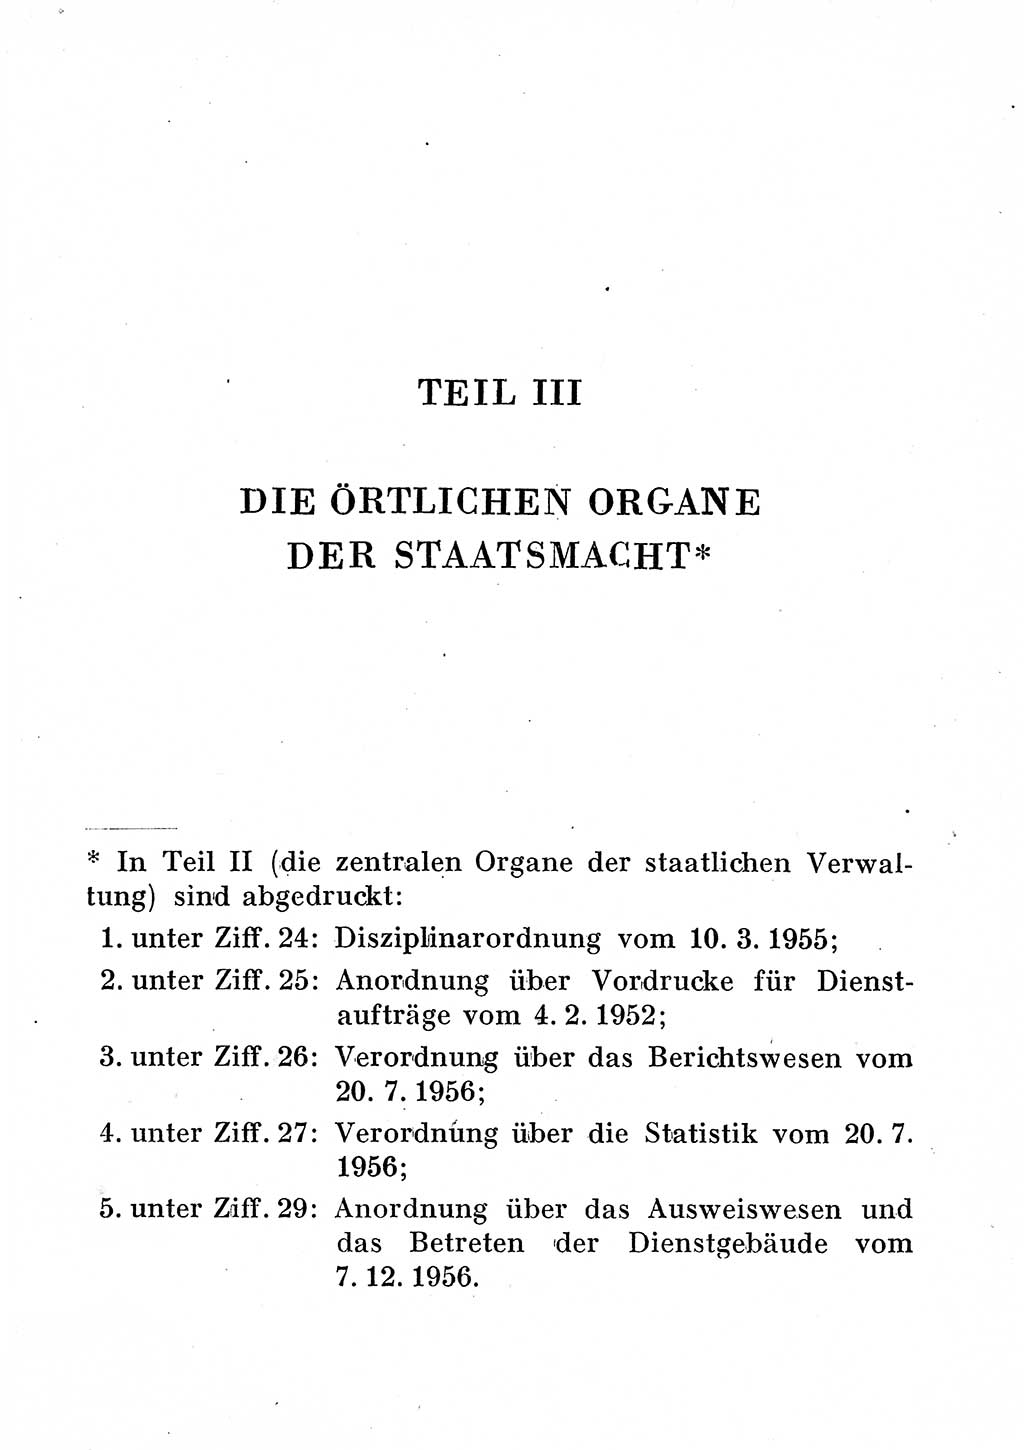 Staats- und verwaltungsrechtliche Gesetze der Deutschen Demokratischen Republik (DDR) 1958, Seite 463 (StVerwR Ges. DDR 1958, S. 463)